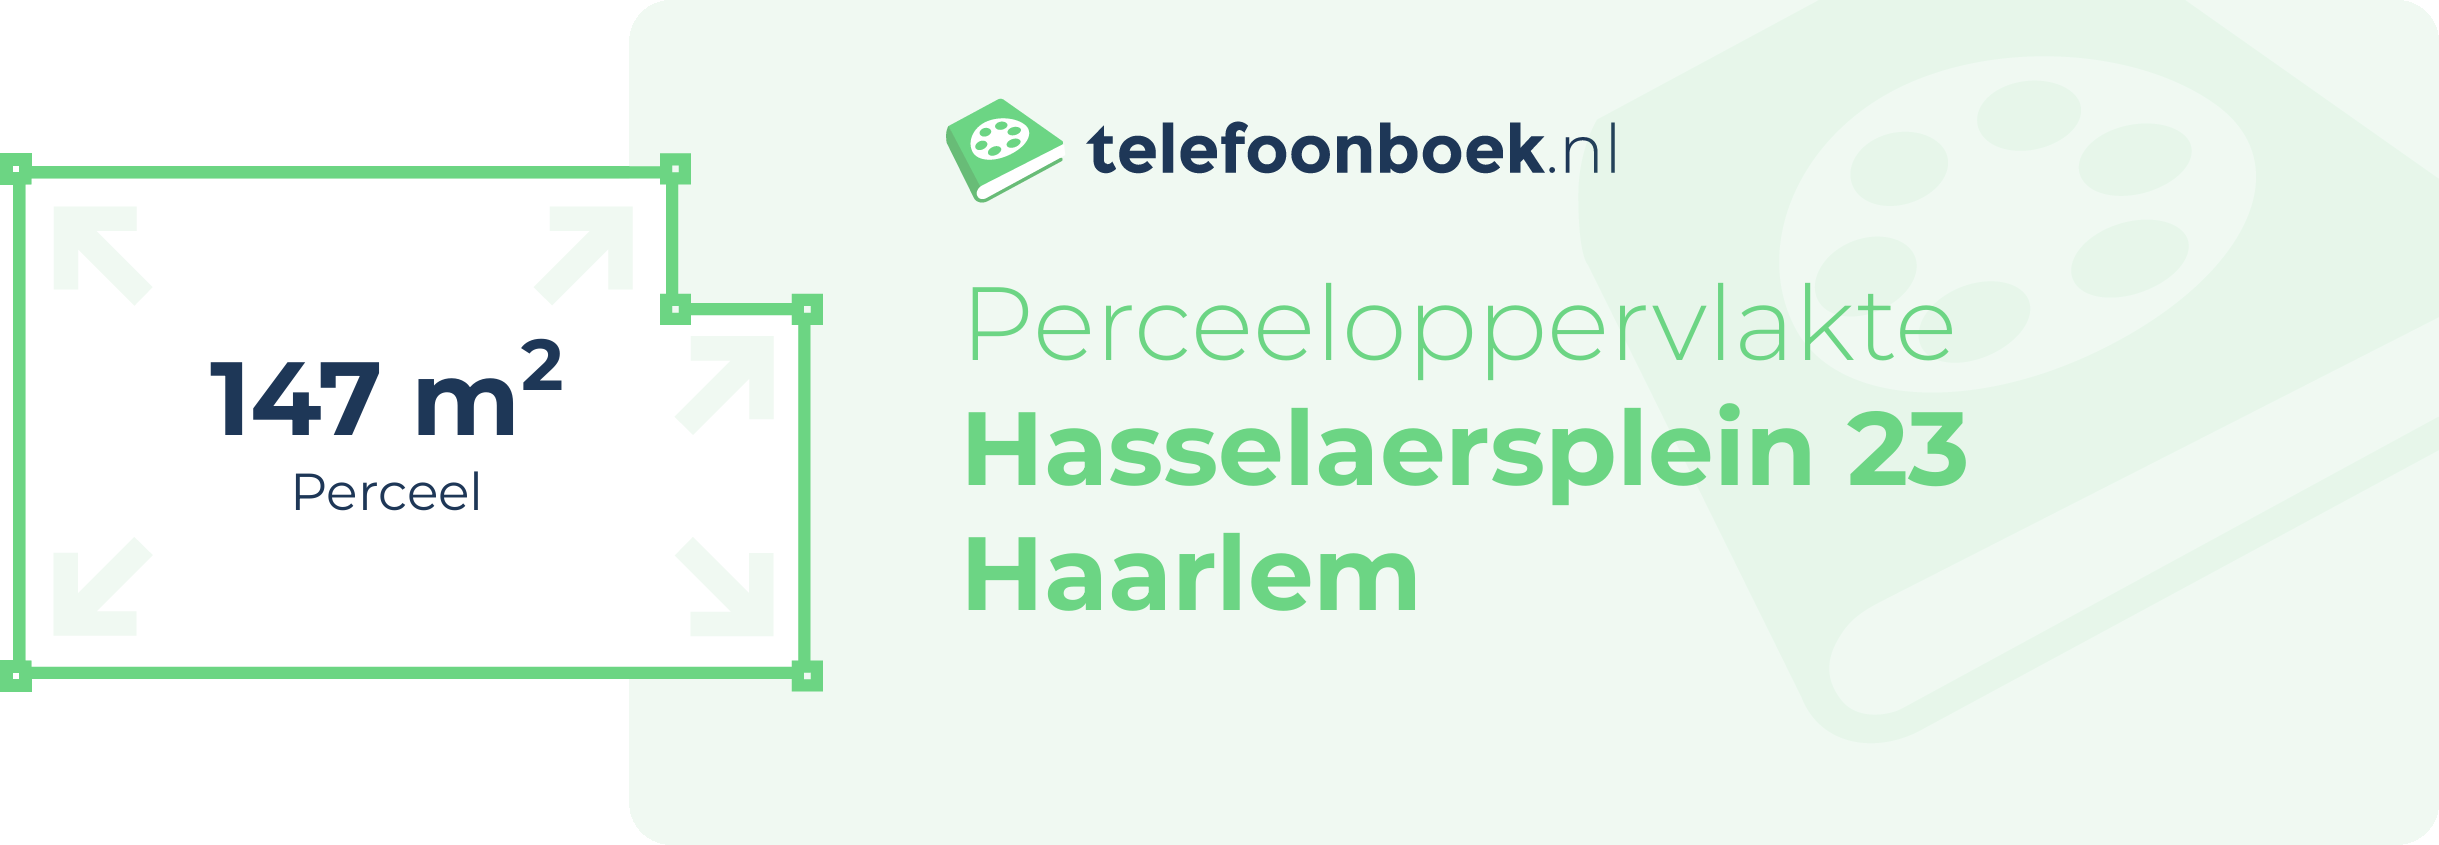 Perceeloppervlakte Hasselaersplein 23 Haarlem